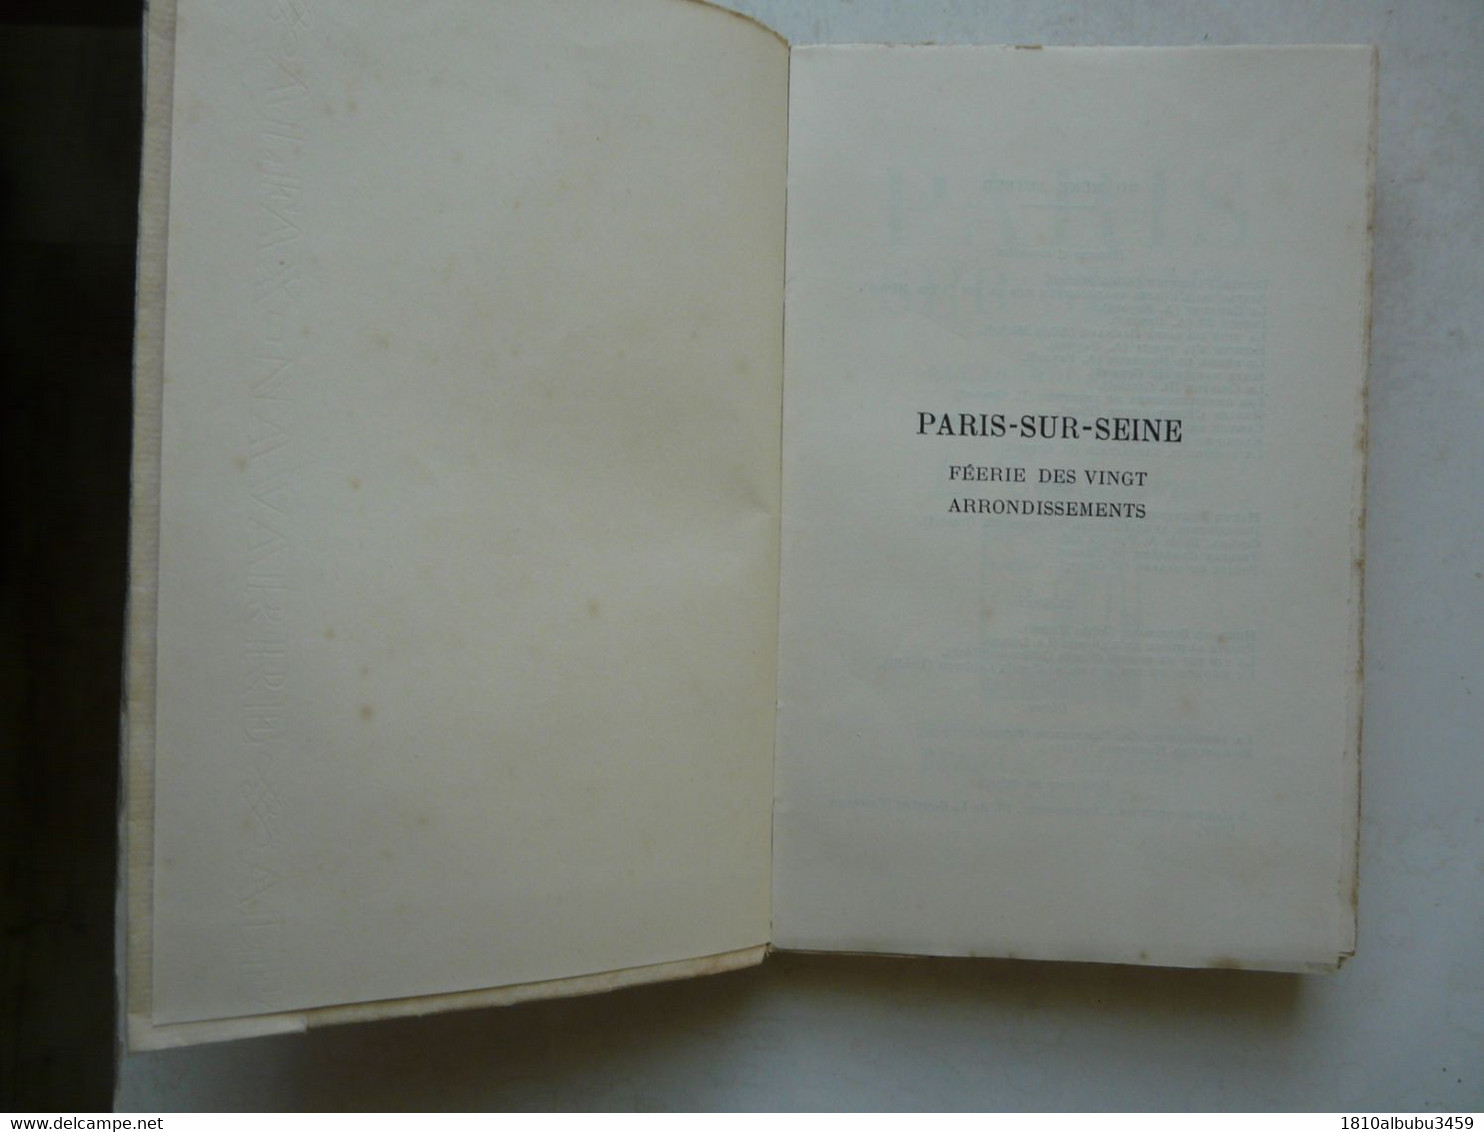 EXEMPLAIRE DE PRESSE XCII - PARIS SUR SEINE Par Alexandre ARNOUX : Le Trentenaire 1939 - Sociologia